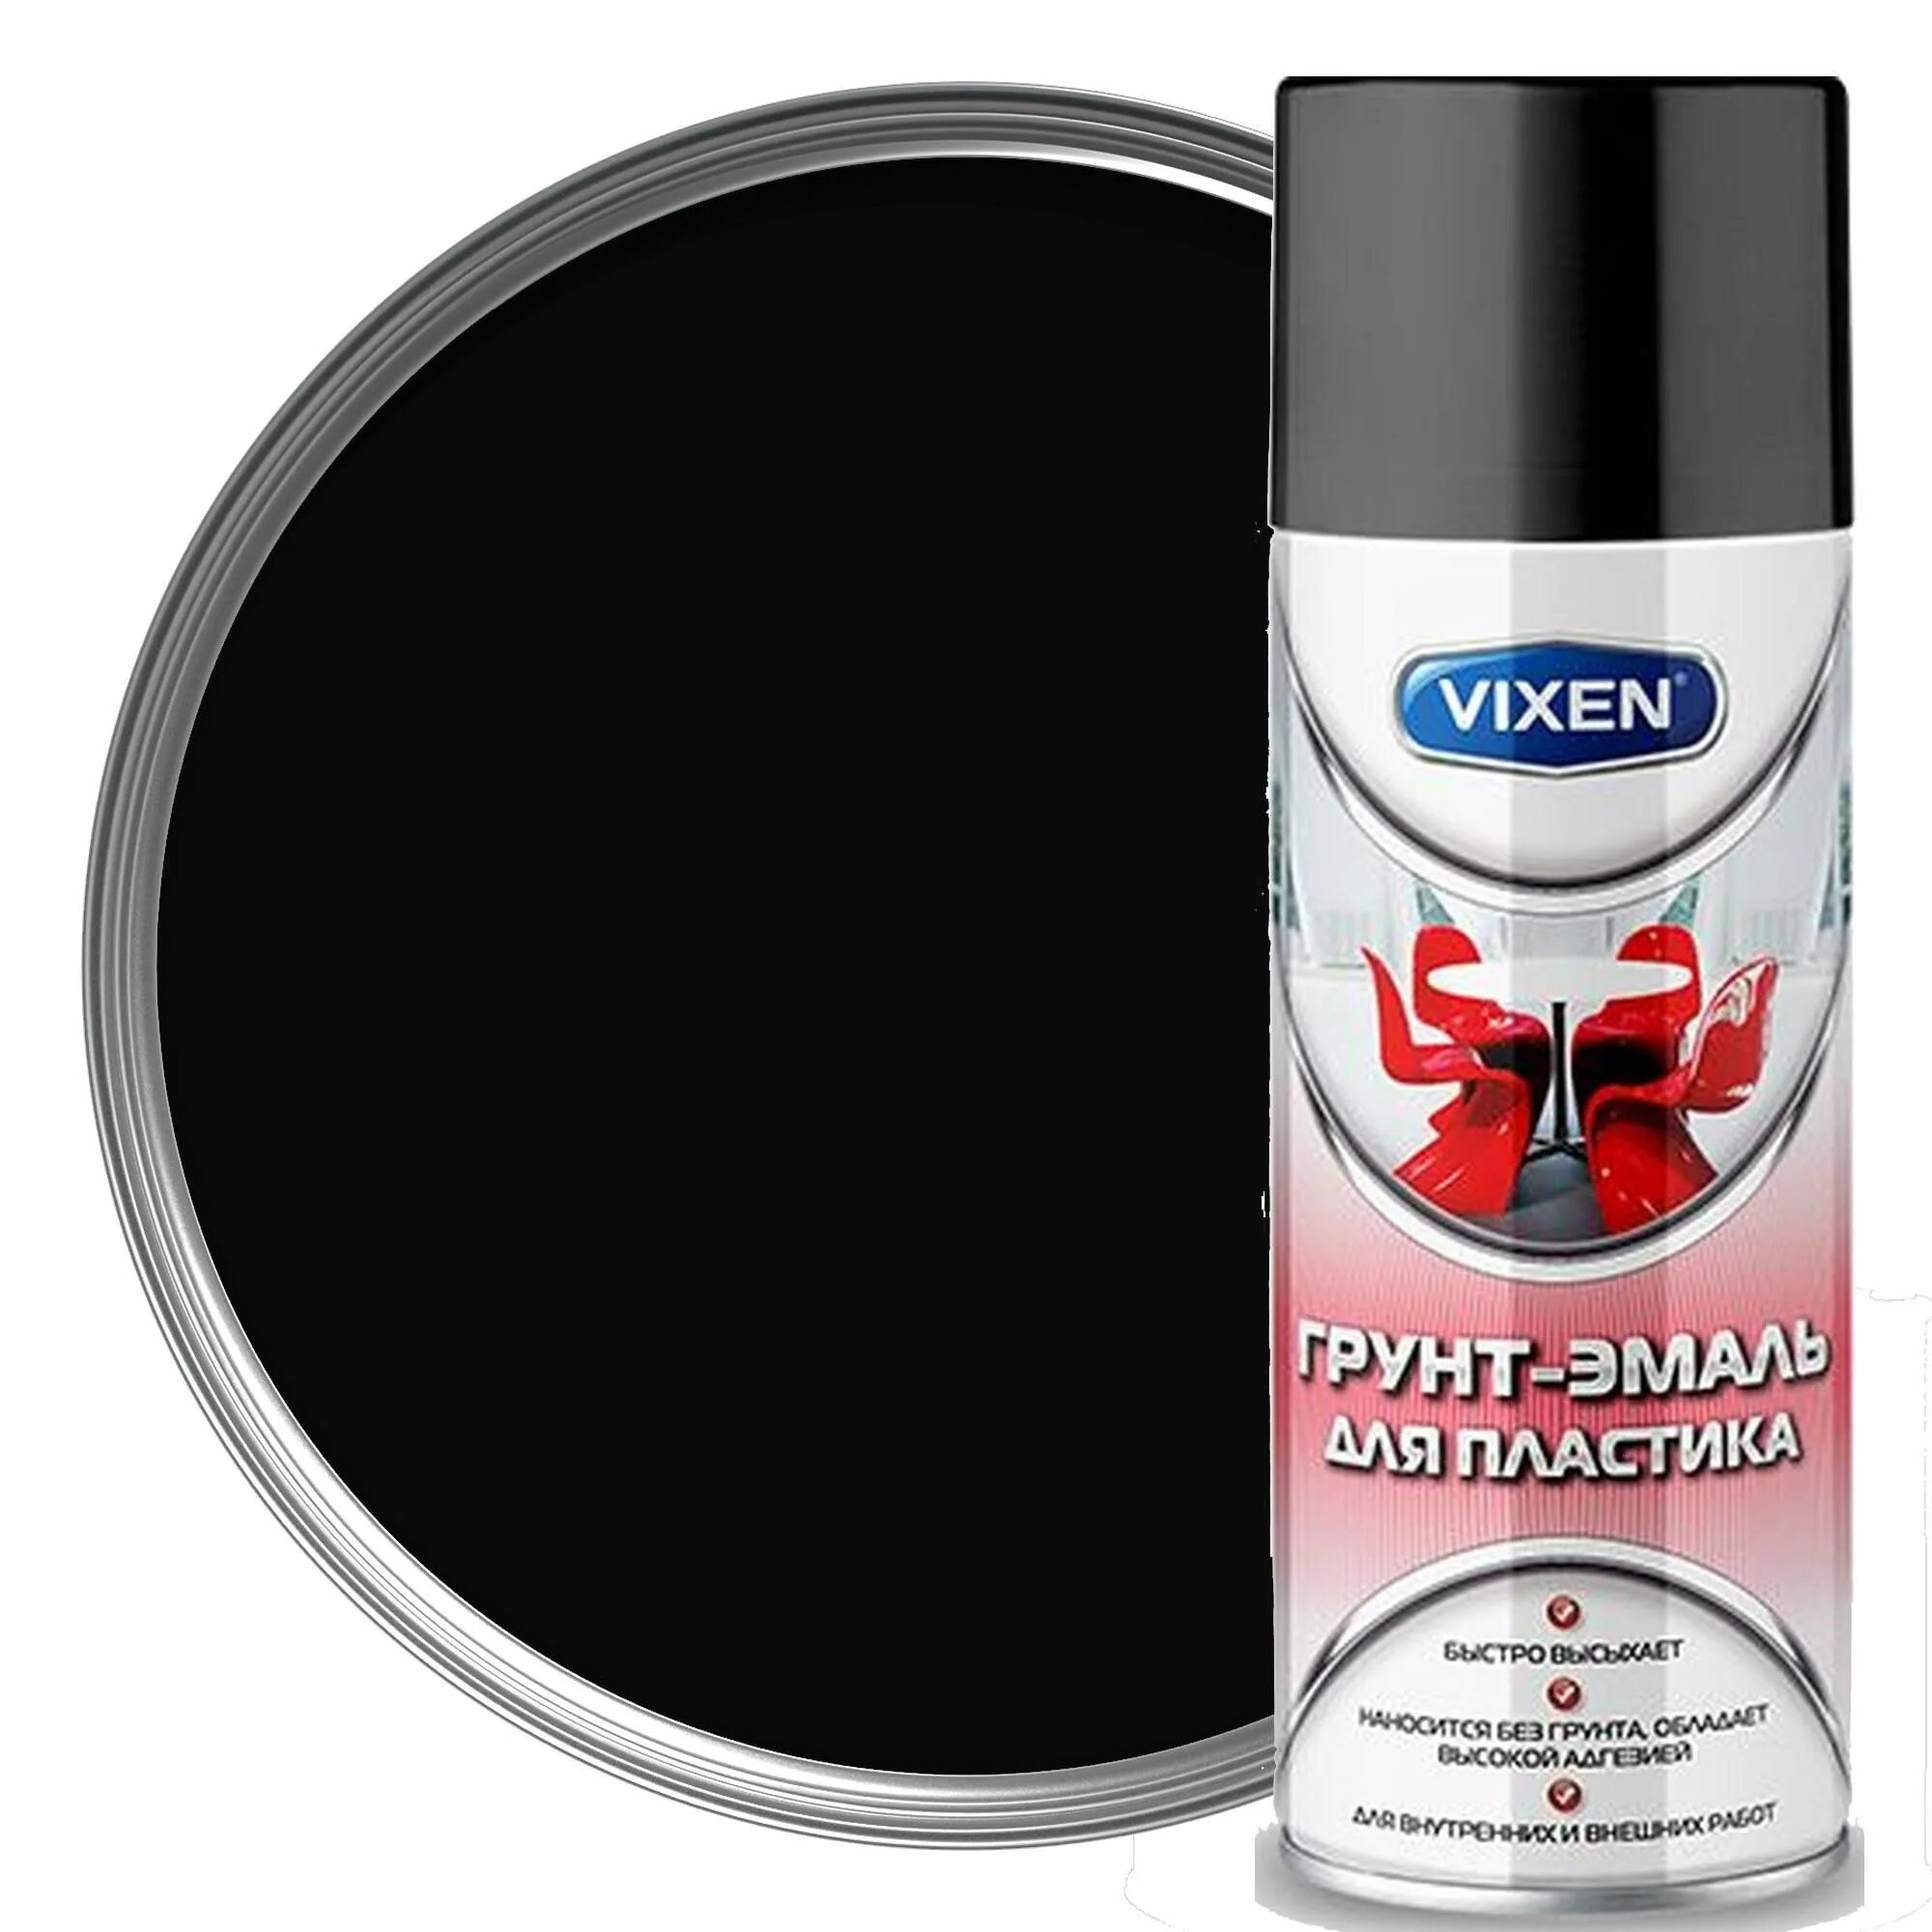 Грунт эмаль черная матовая. Грунт-эмаль для пластика Vixen 9005 черный матовый. Vixen VX -50100 грунт эмаль для пластика. Vixen грунт эмаль для пластика. Грунт эмаль для пластика черная RAL 9005 520 мл.